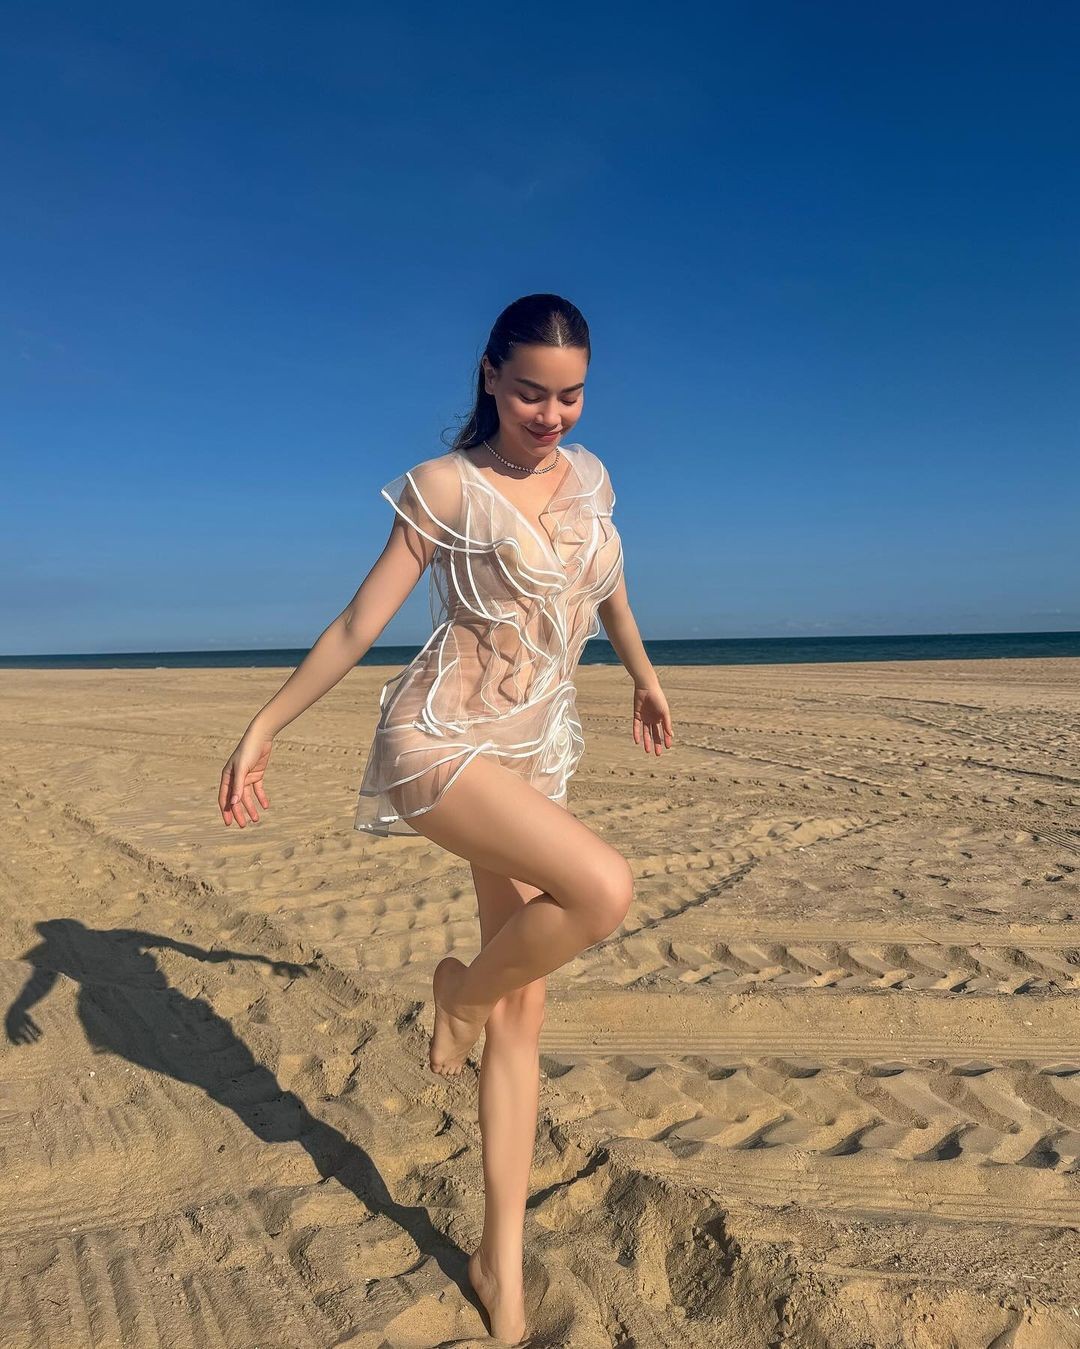 Hồ Ngọc Hà và dàn mỹ nhân Việt khởi động đầu hè với áo tắm ảnh 2